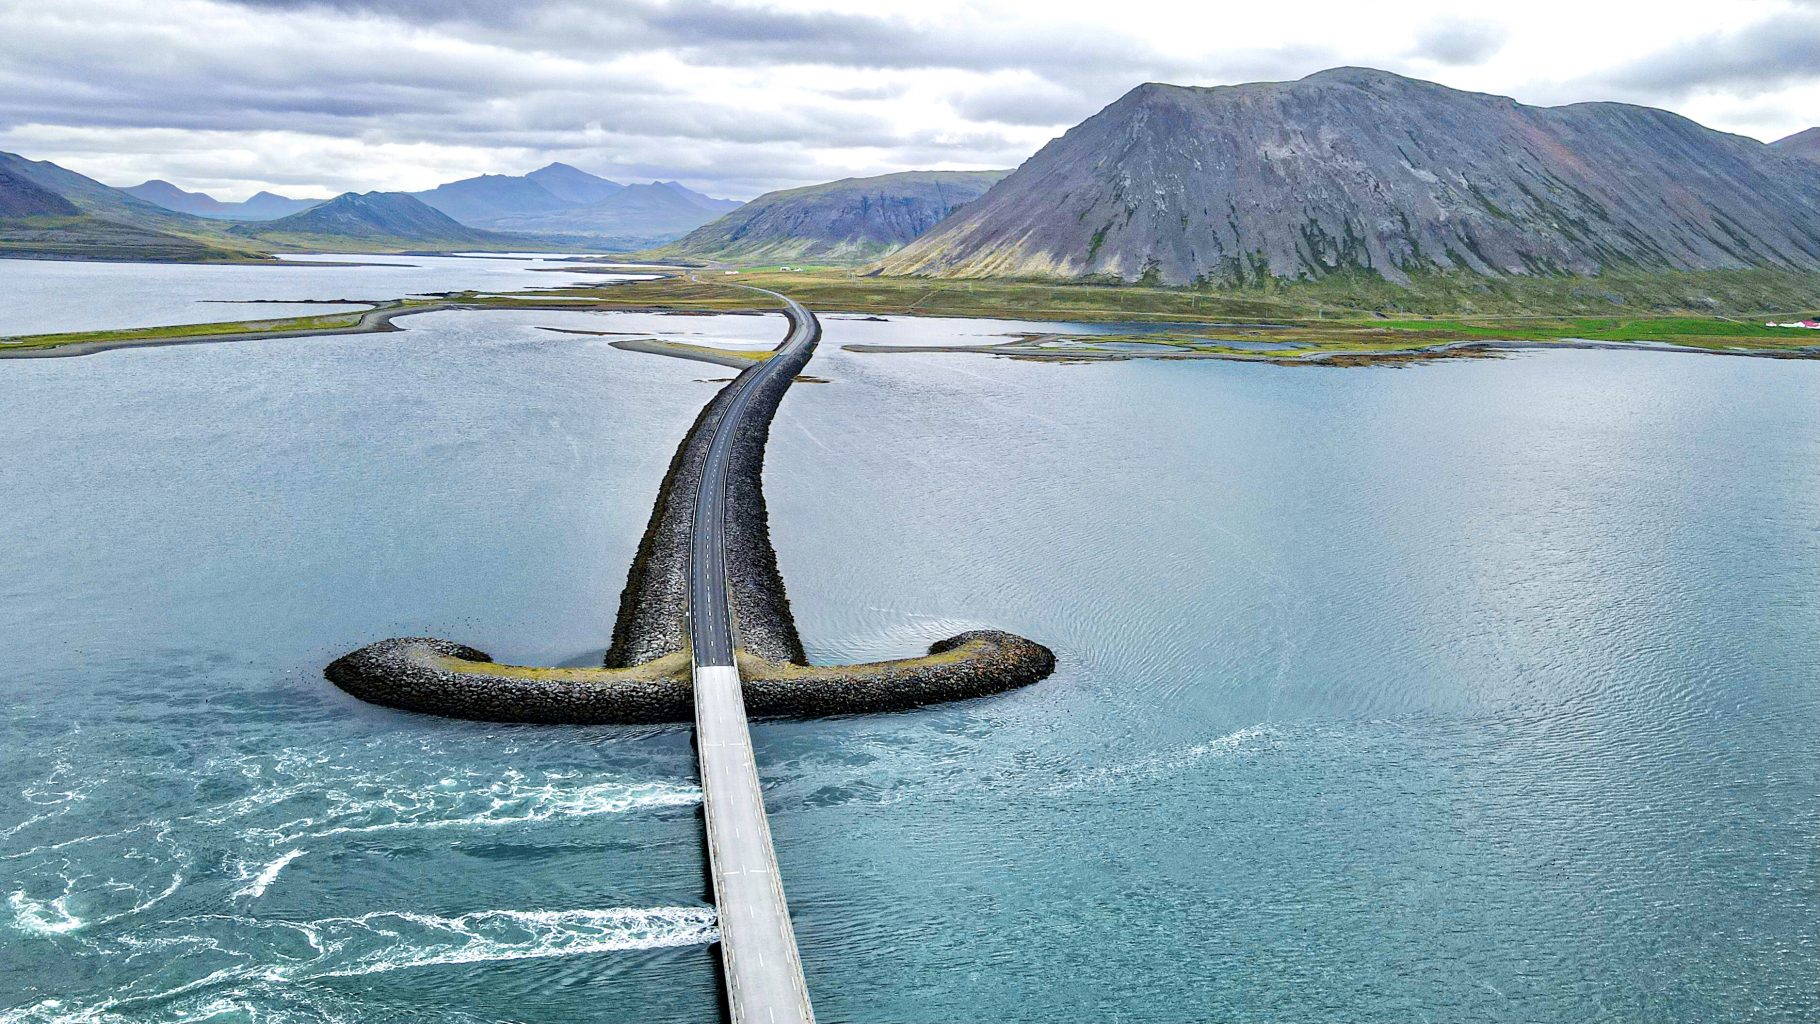 ¿Dónde está la carretera con forma de espada (Sword Road) en Islandia?